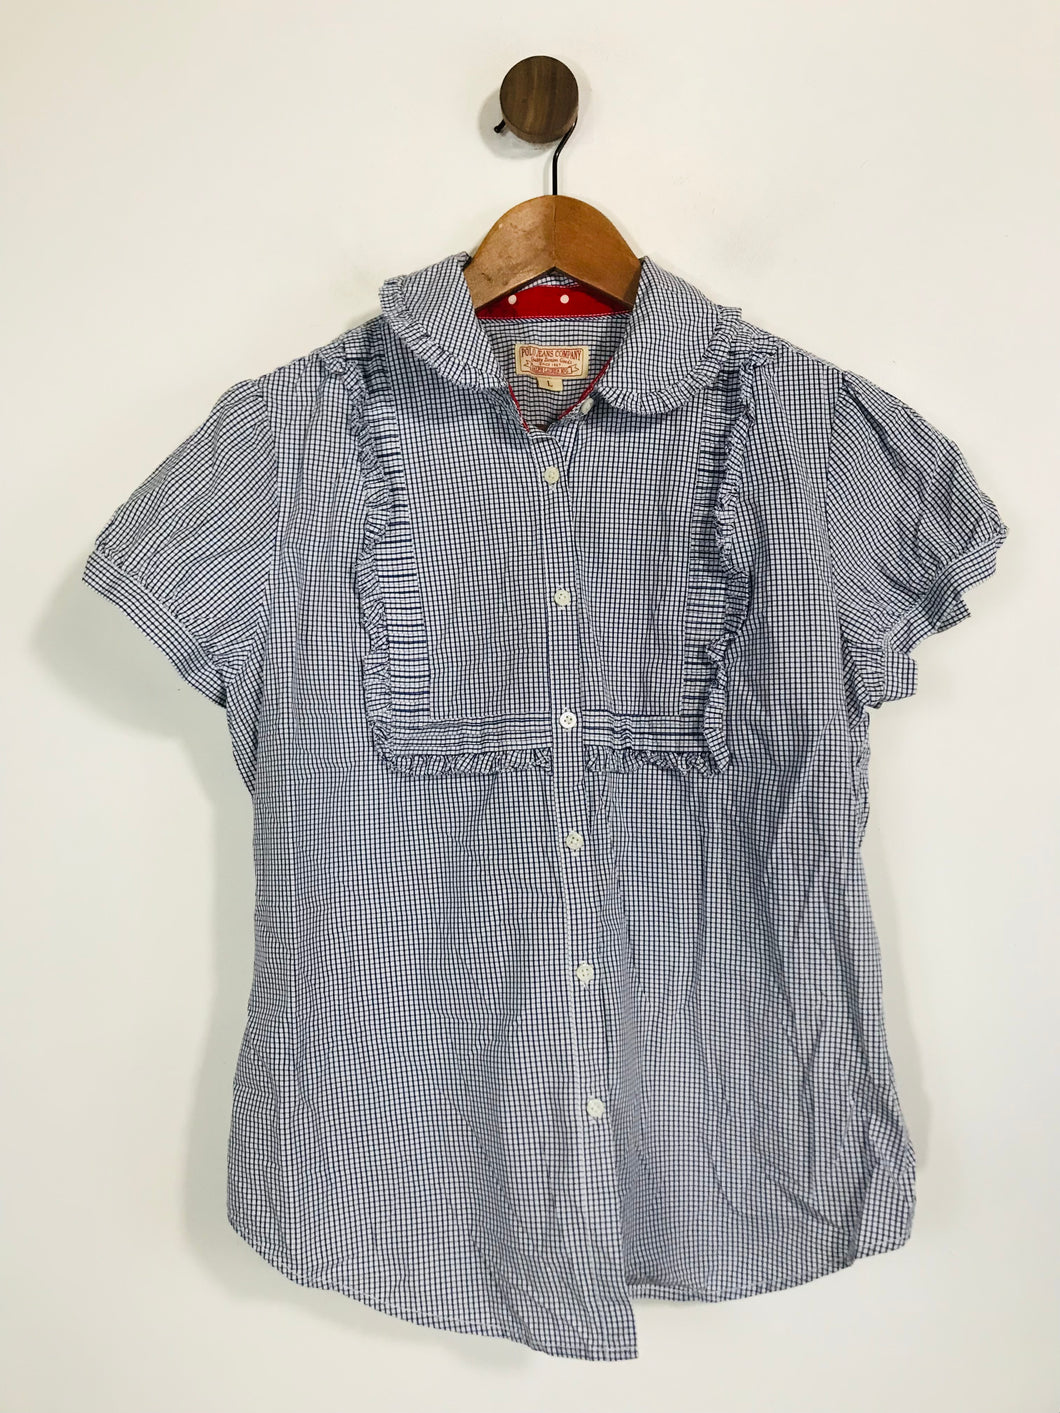 Ralph Lauren Women's Cotton Check Gingham Button-Up Shirt | L UK14 | Blue